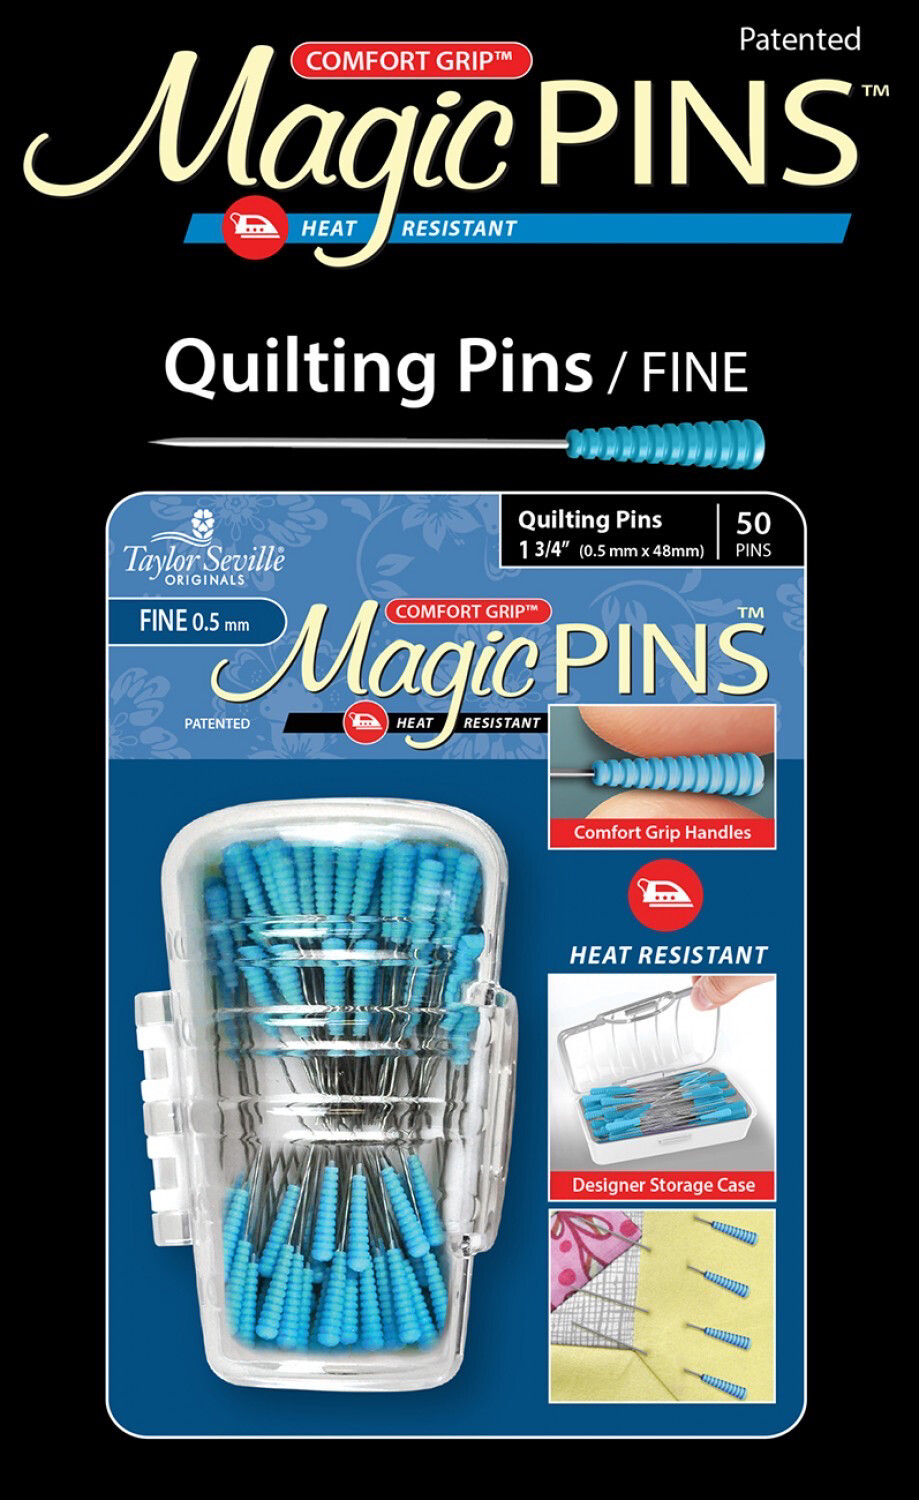 Magic Pins Quilting Pins